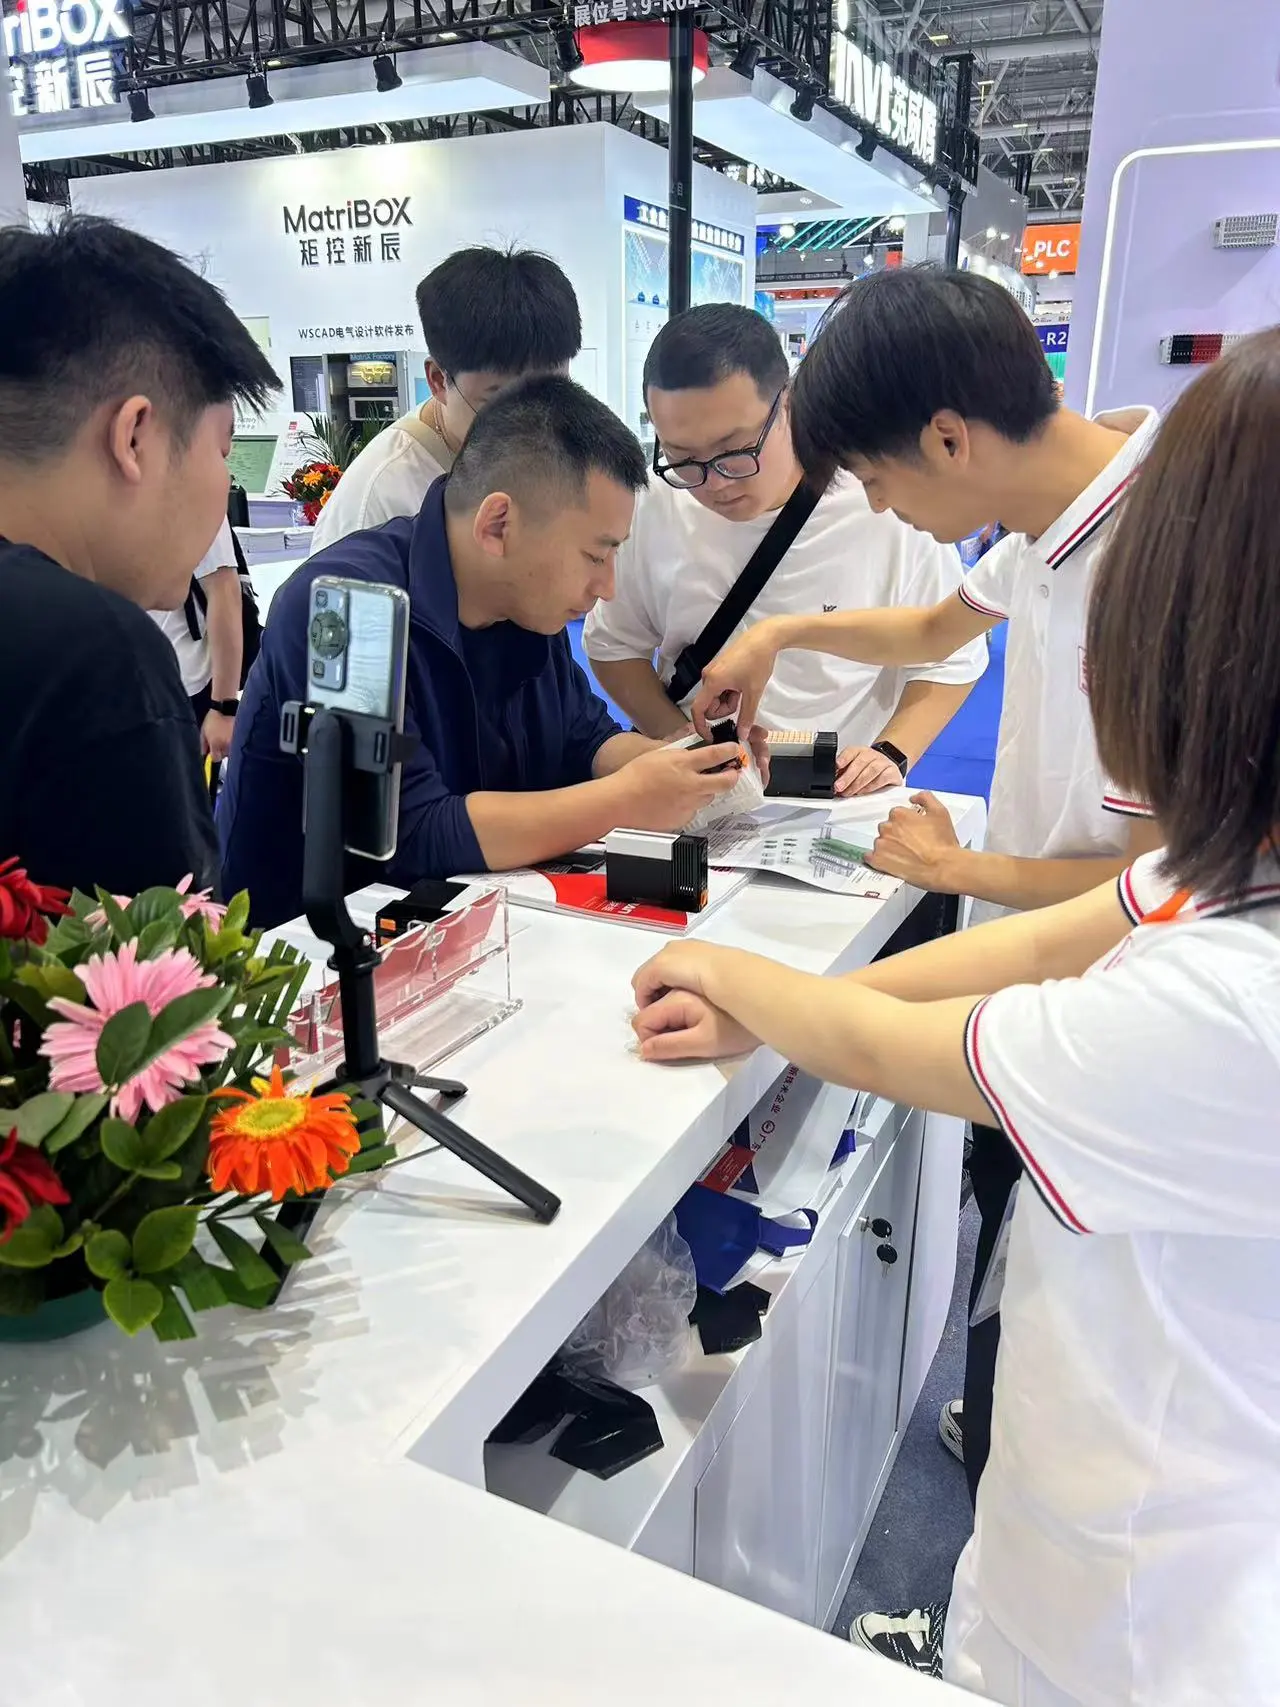 Wykorzystując falę inteligentnej automatyki przemysłowej, firma Sanan zyskała uznanie branży na wystawie ITES w Shenzhen